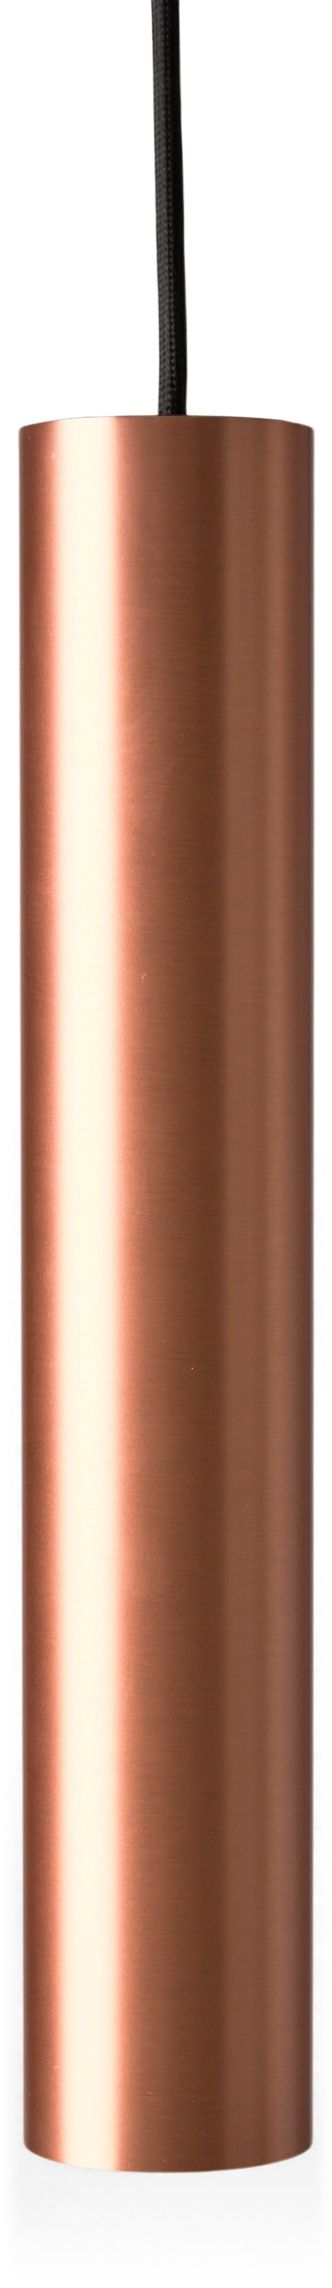 ANTIDARK - Designline Tube Flex pendel rose goldfra Lampeexperten